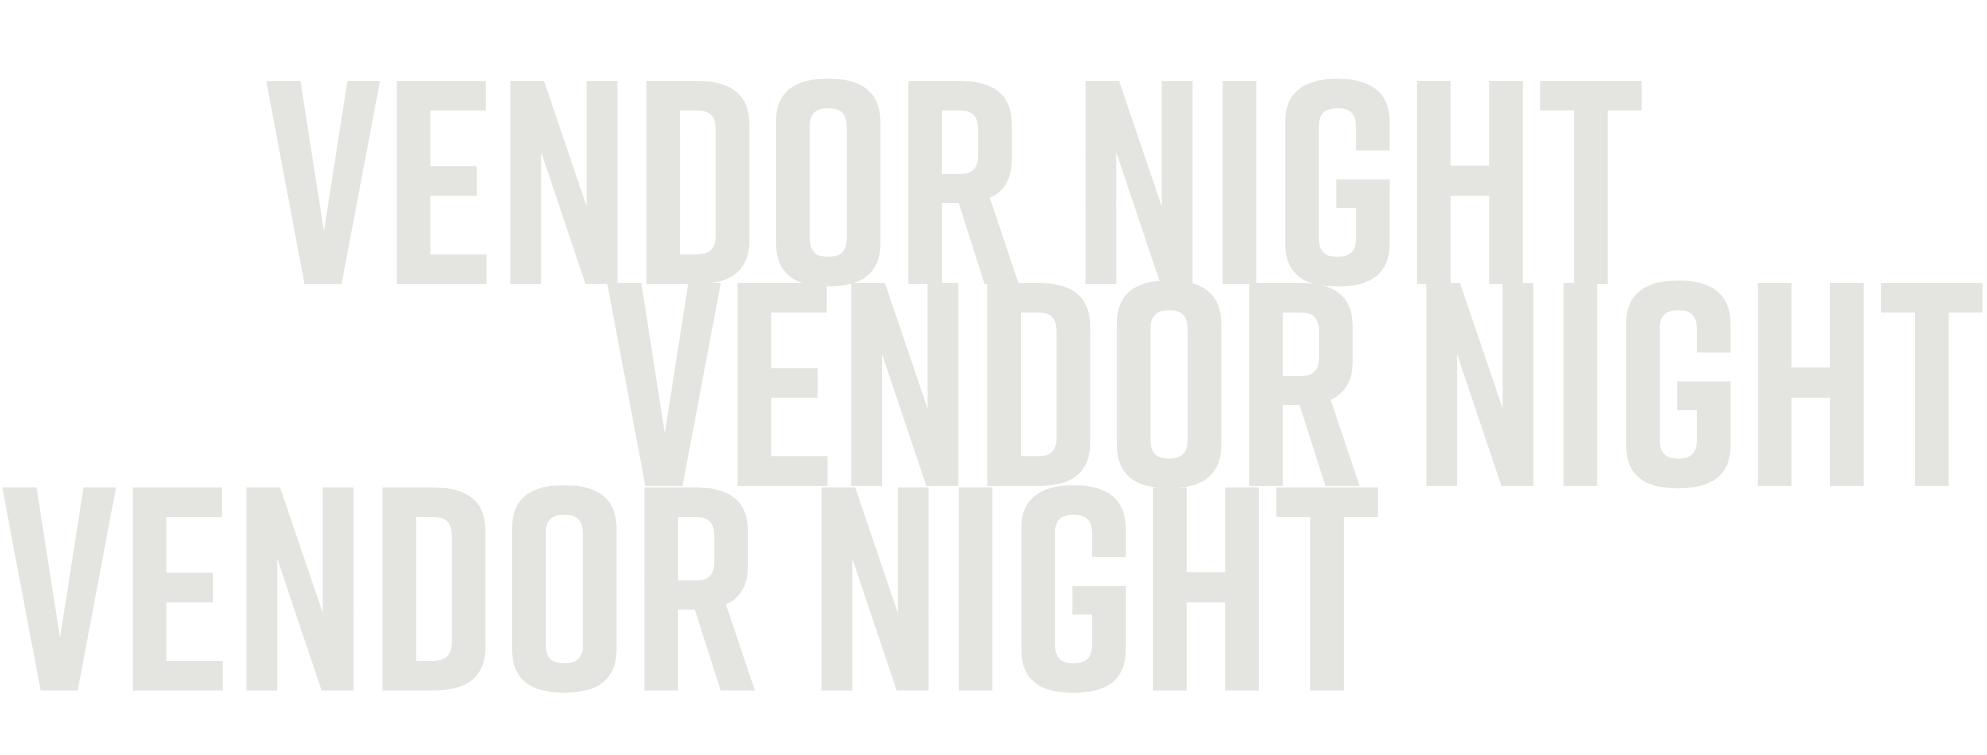 vendor night